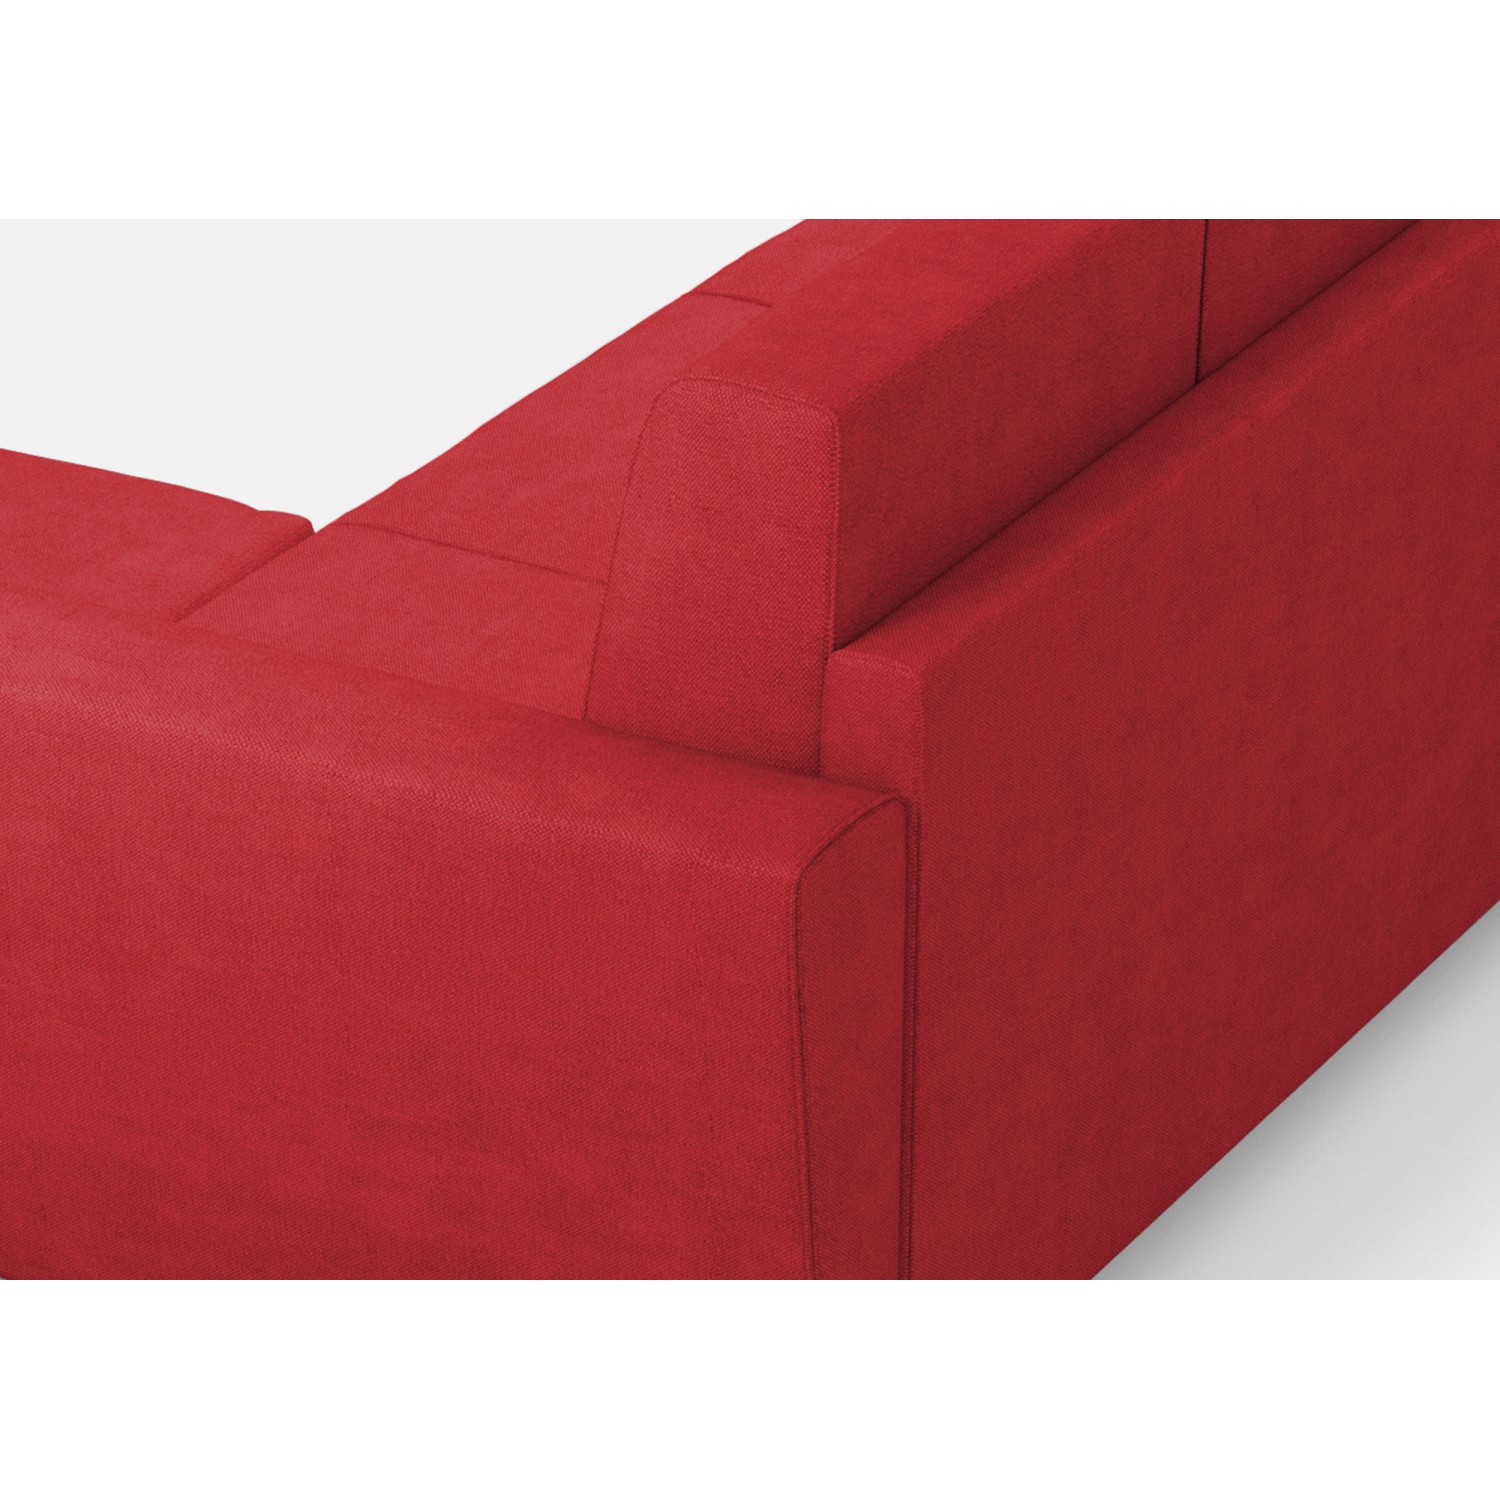 Ityhome Divano Yasel 2 posti (due sedute da 60cm) + pouf misure esterne L.152 P.155 colore rosso